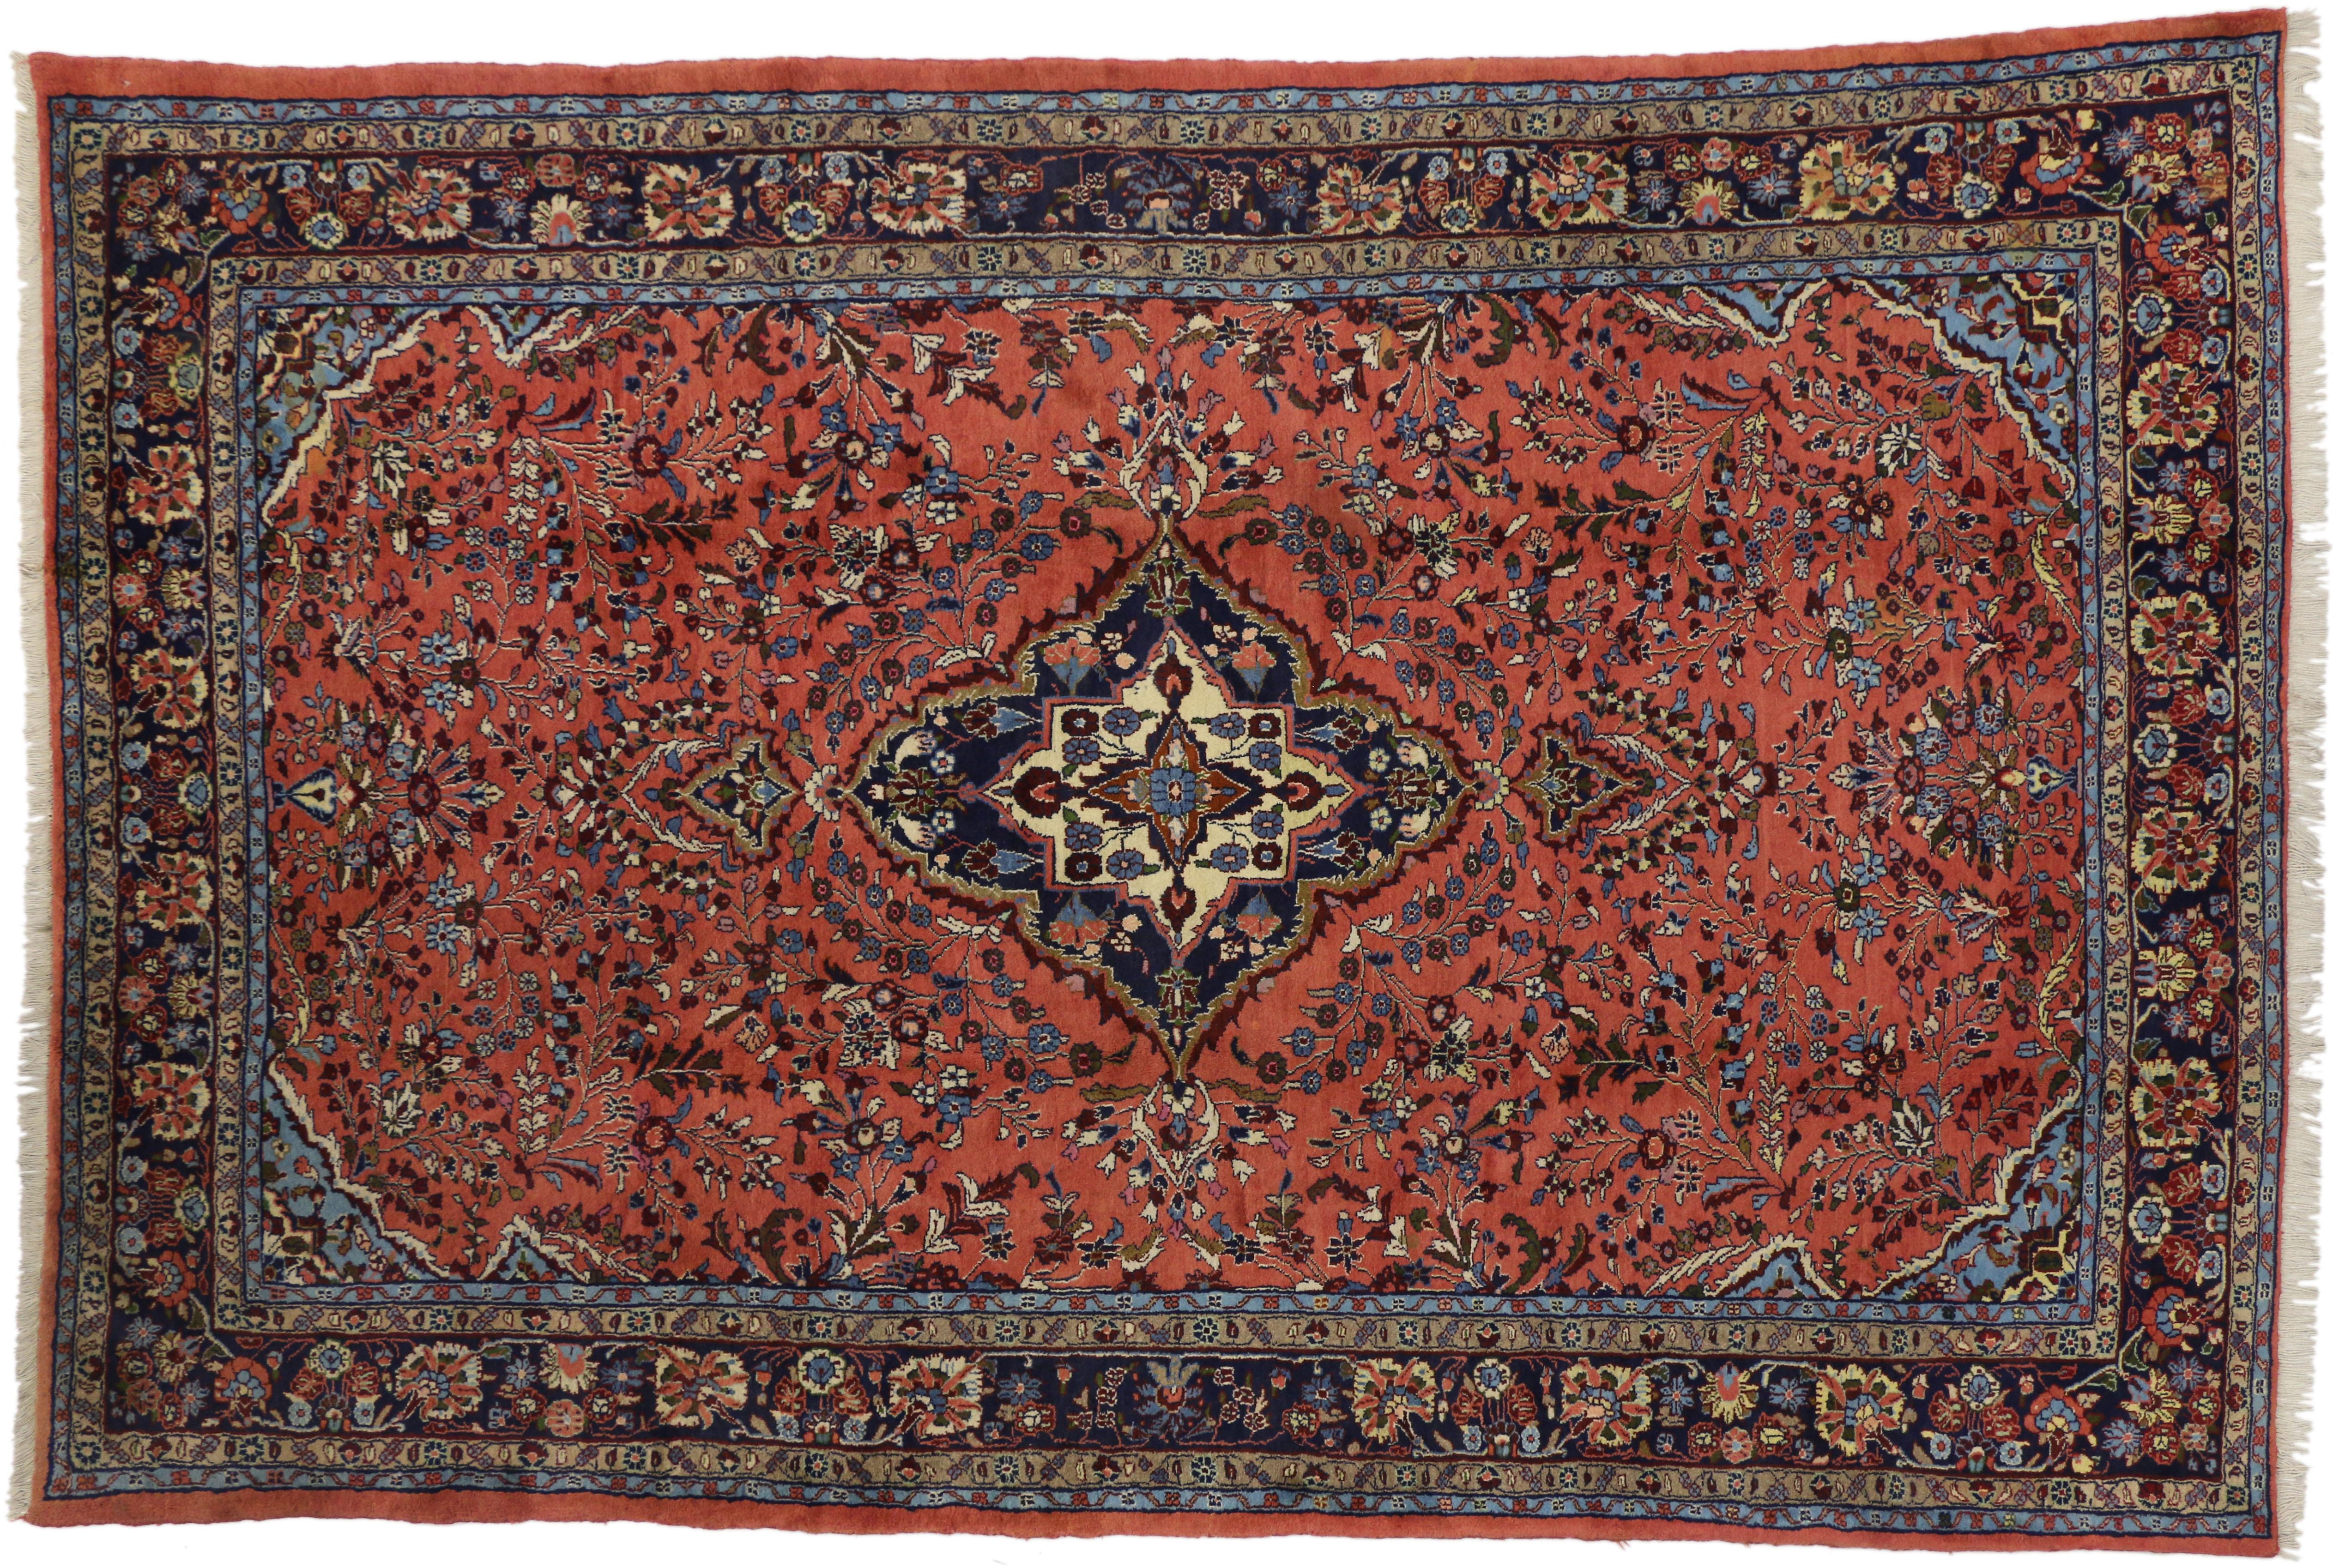 60340, tapis persan vintage Mehraban de style traditionnel. Ce ravissant tapis Mehraban vintage en laine nouée à la main présente un médaillon lobé bleu marine et ivoire entouré de gerbes florales et de palmettes en fleurs. Des écoinçons bleu ciel